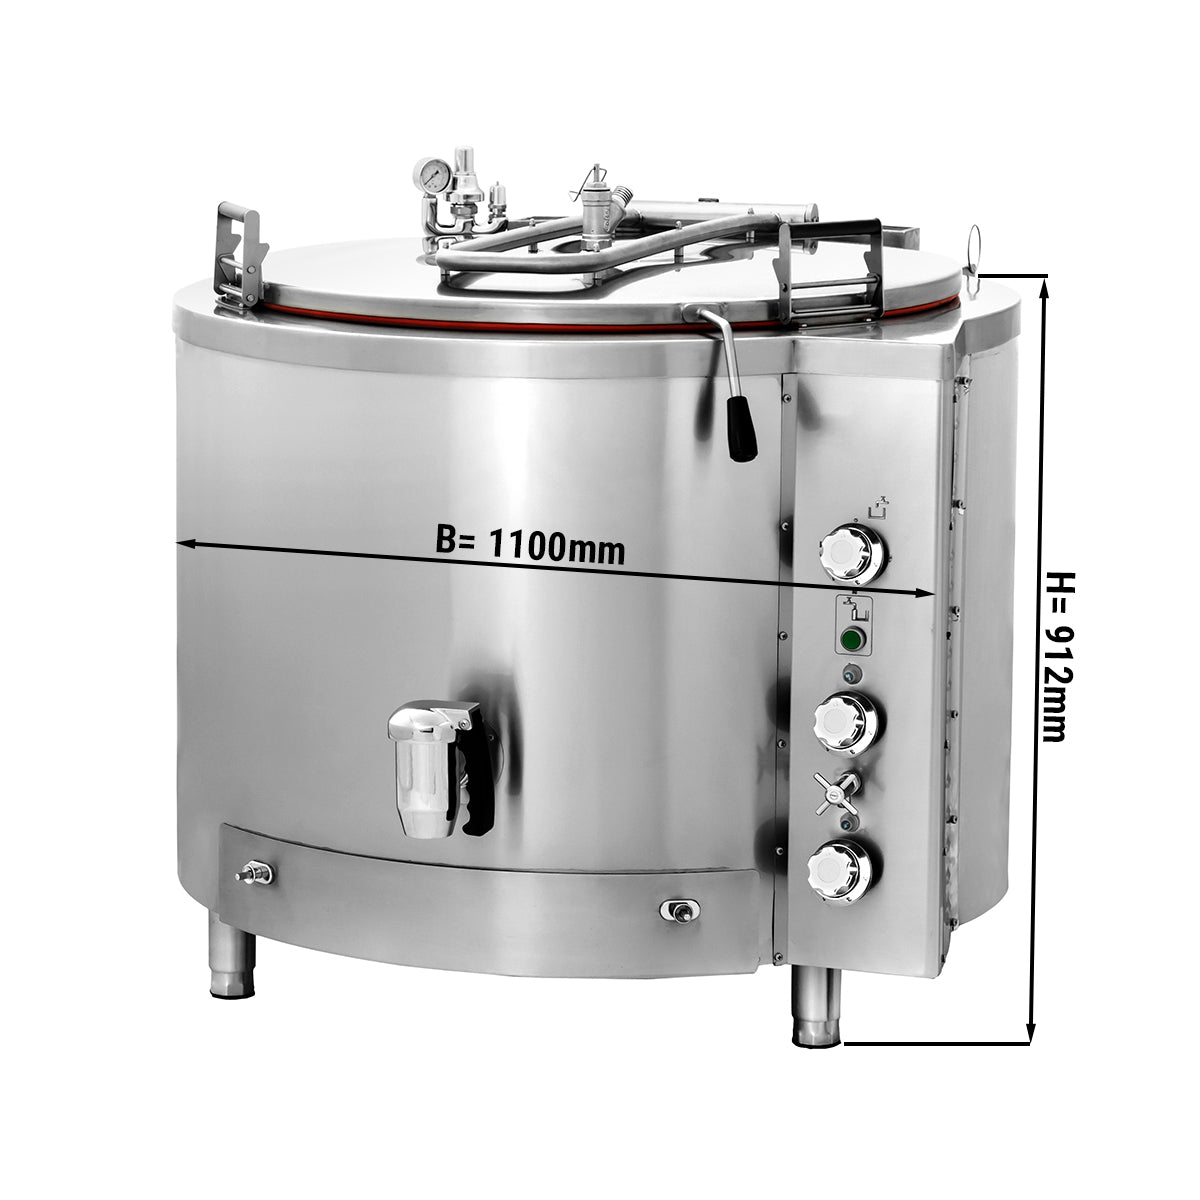 Gas kogekar - 300 liter - Indirekte opvarmning